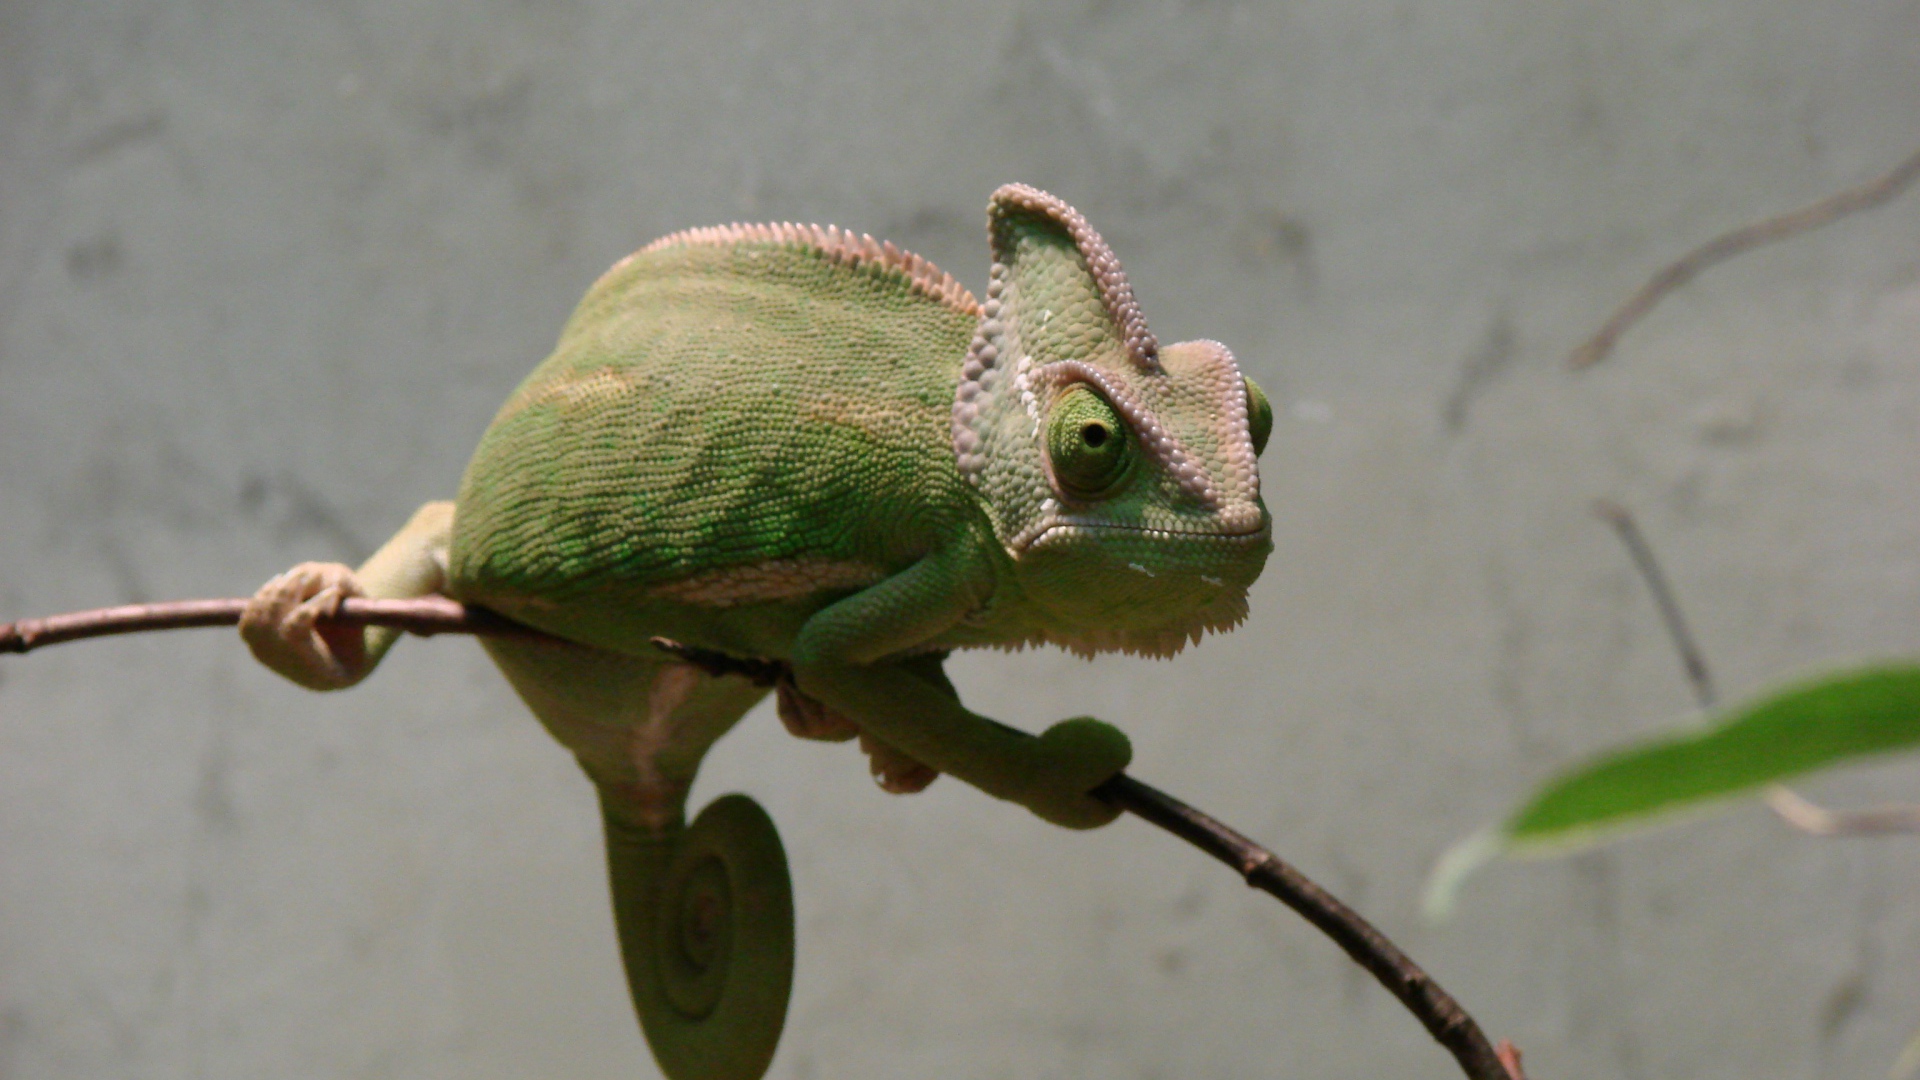 Зеленый хамелеон сидит на ветке на фоне серой стены